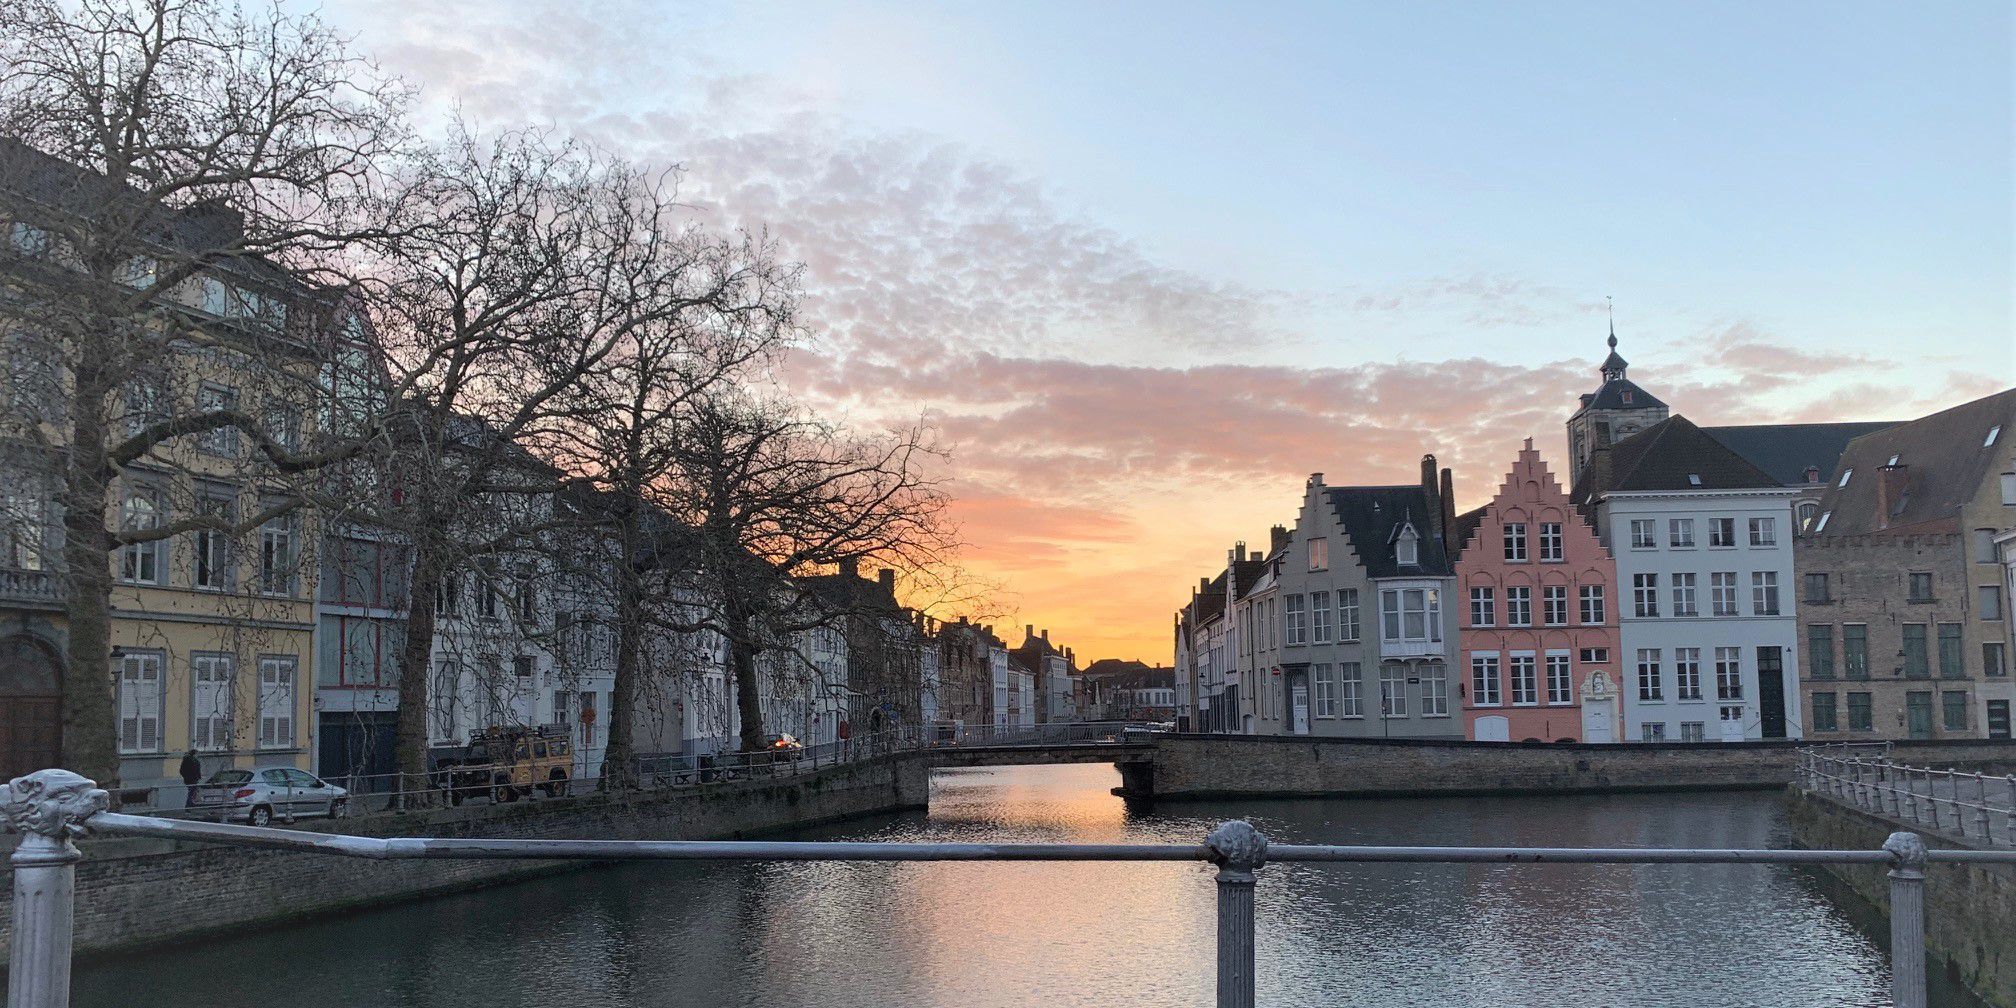 Bruges january 2019